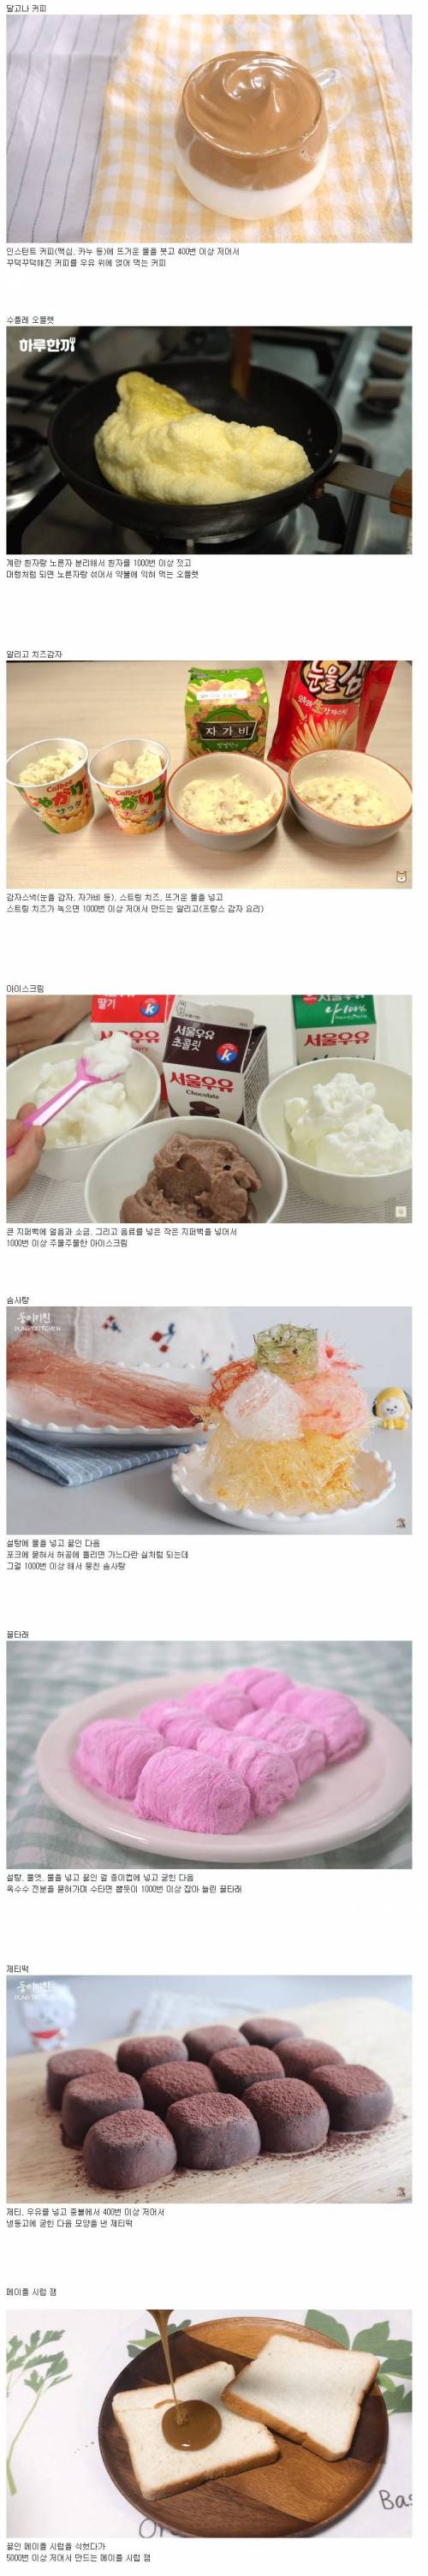 한국인 자가격리 요리법.jpg